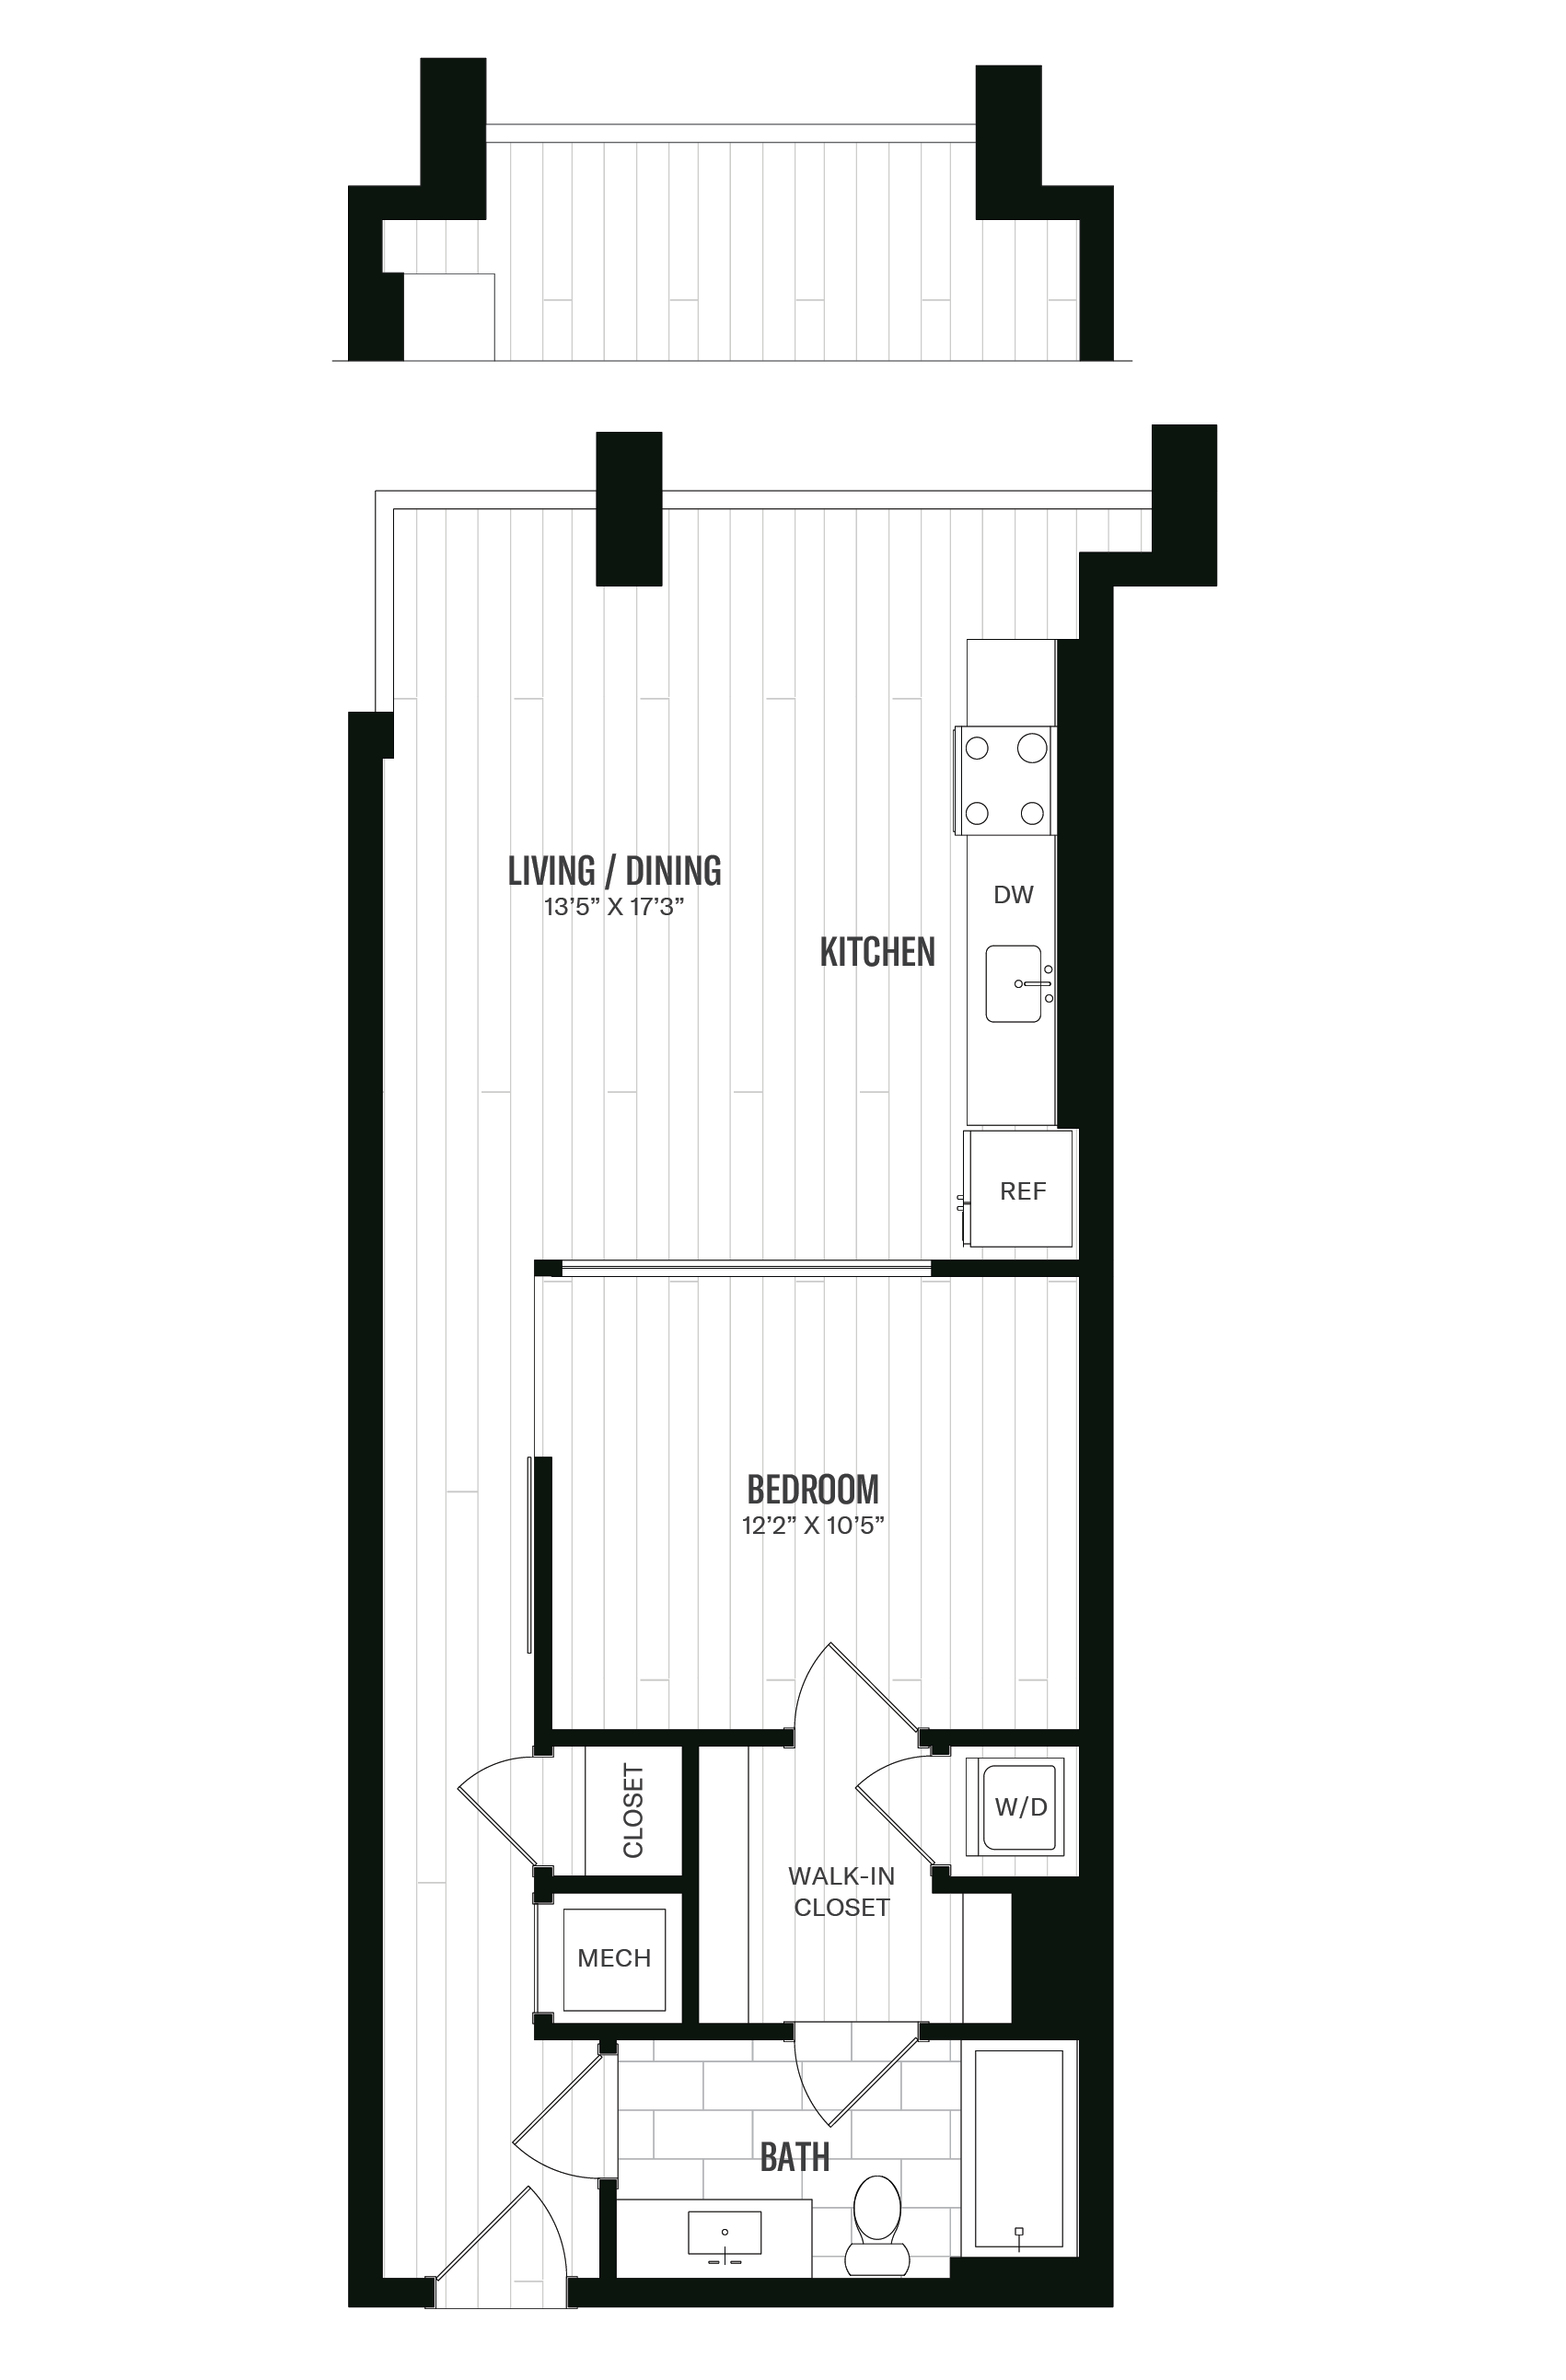 Floorplan image of unit 539